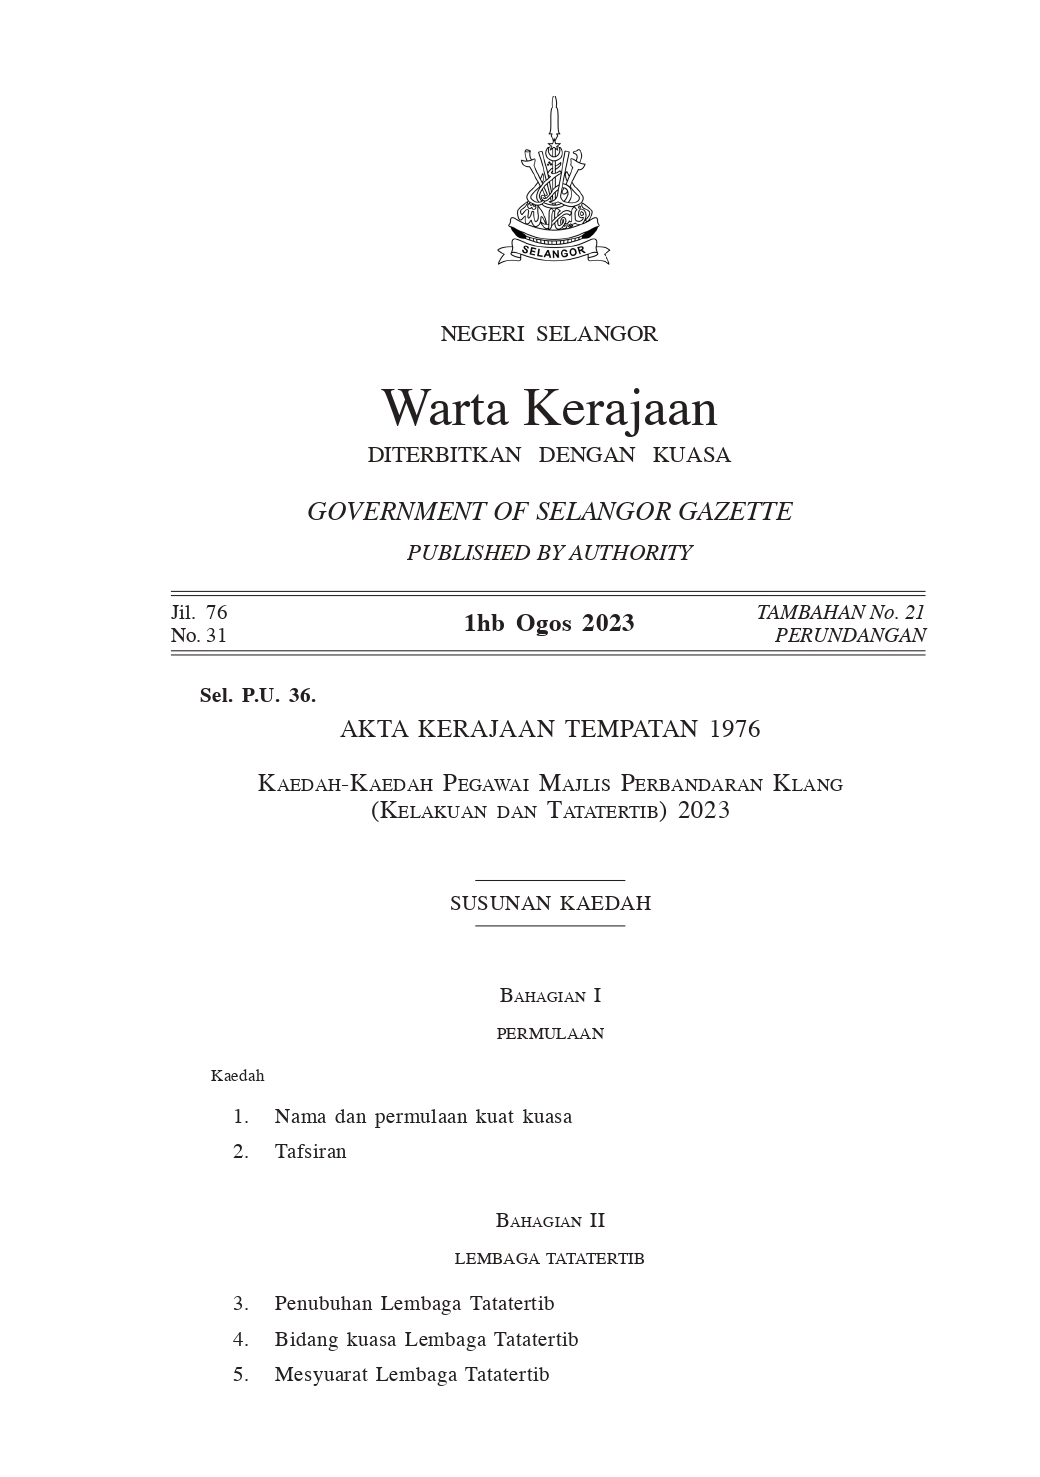 Kaedah-Kaedah Pegawai Majlis Perbandaran Klang (Kelakuan dan Tatatertib) 2023